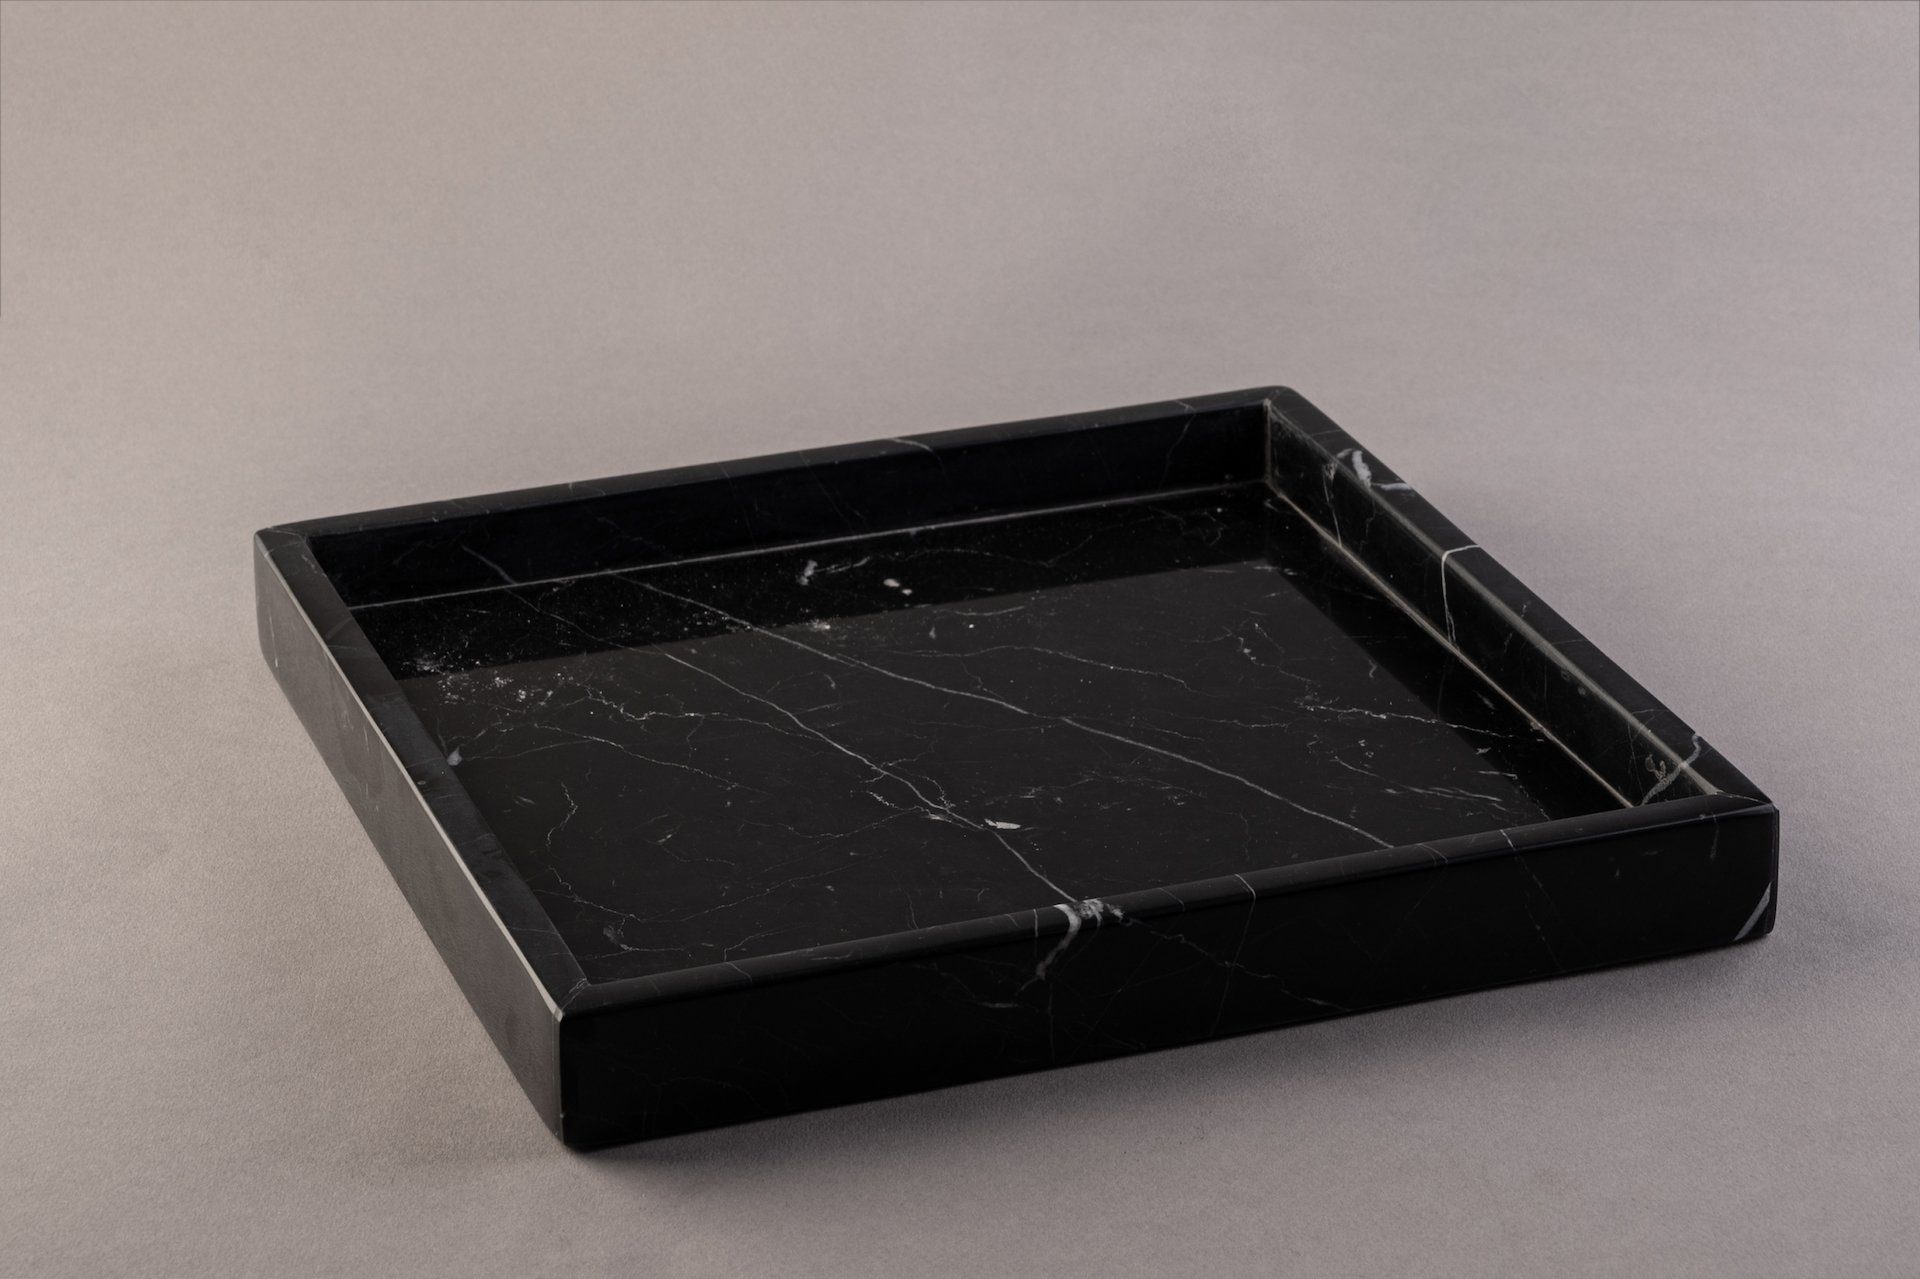 marmortrend Sehnsucht nach Einzigartigkeit Dekotablett marmortrend CELIN Marmor Tablett quadratisch